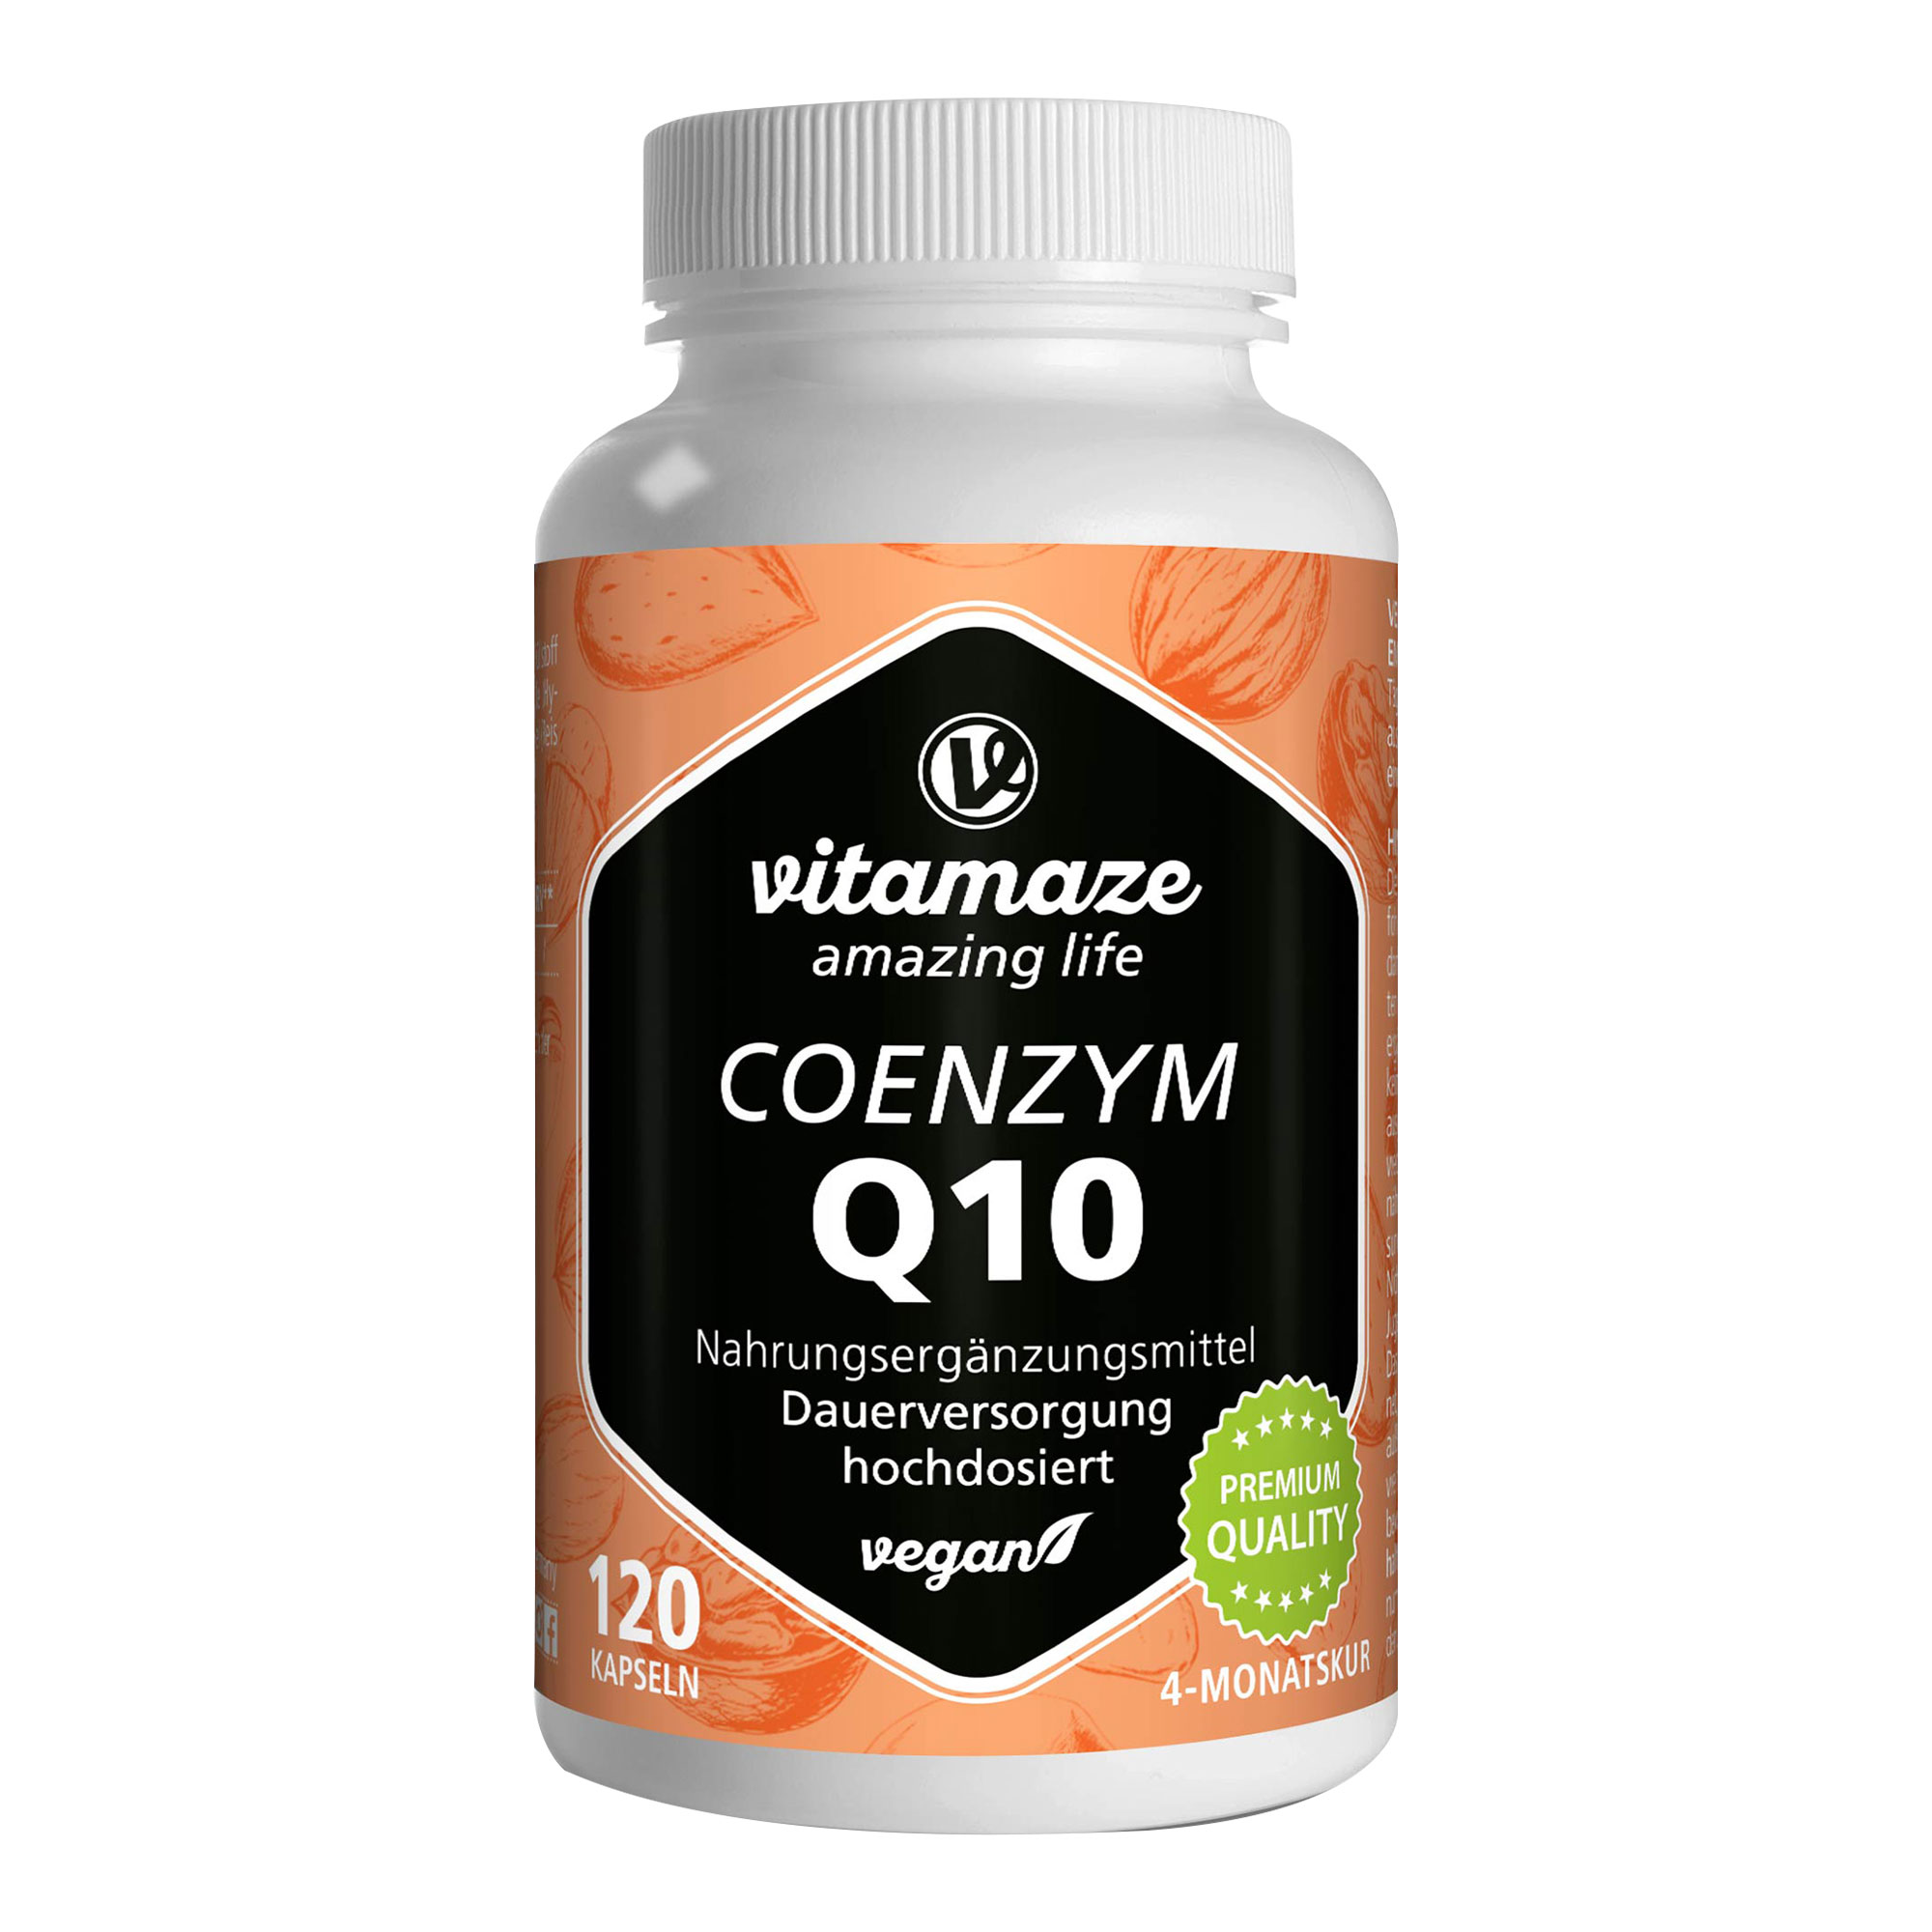 Nahrungsergänzungsmittel mit Coenzym Q10. Anti-Aging von innen.